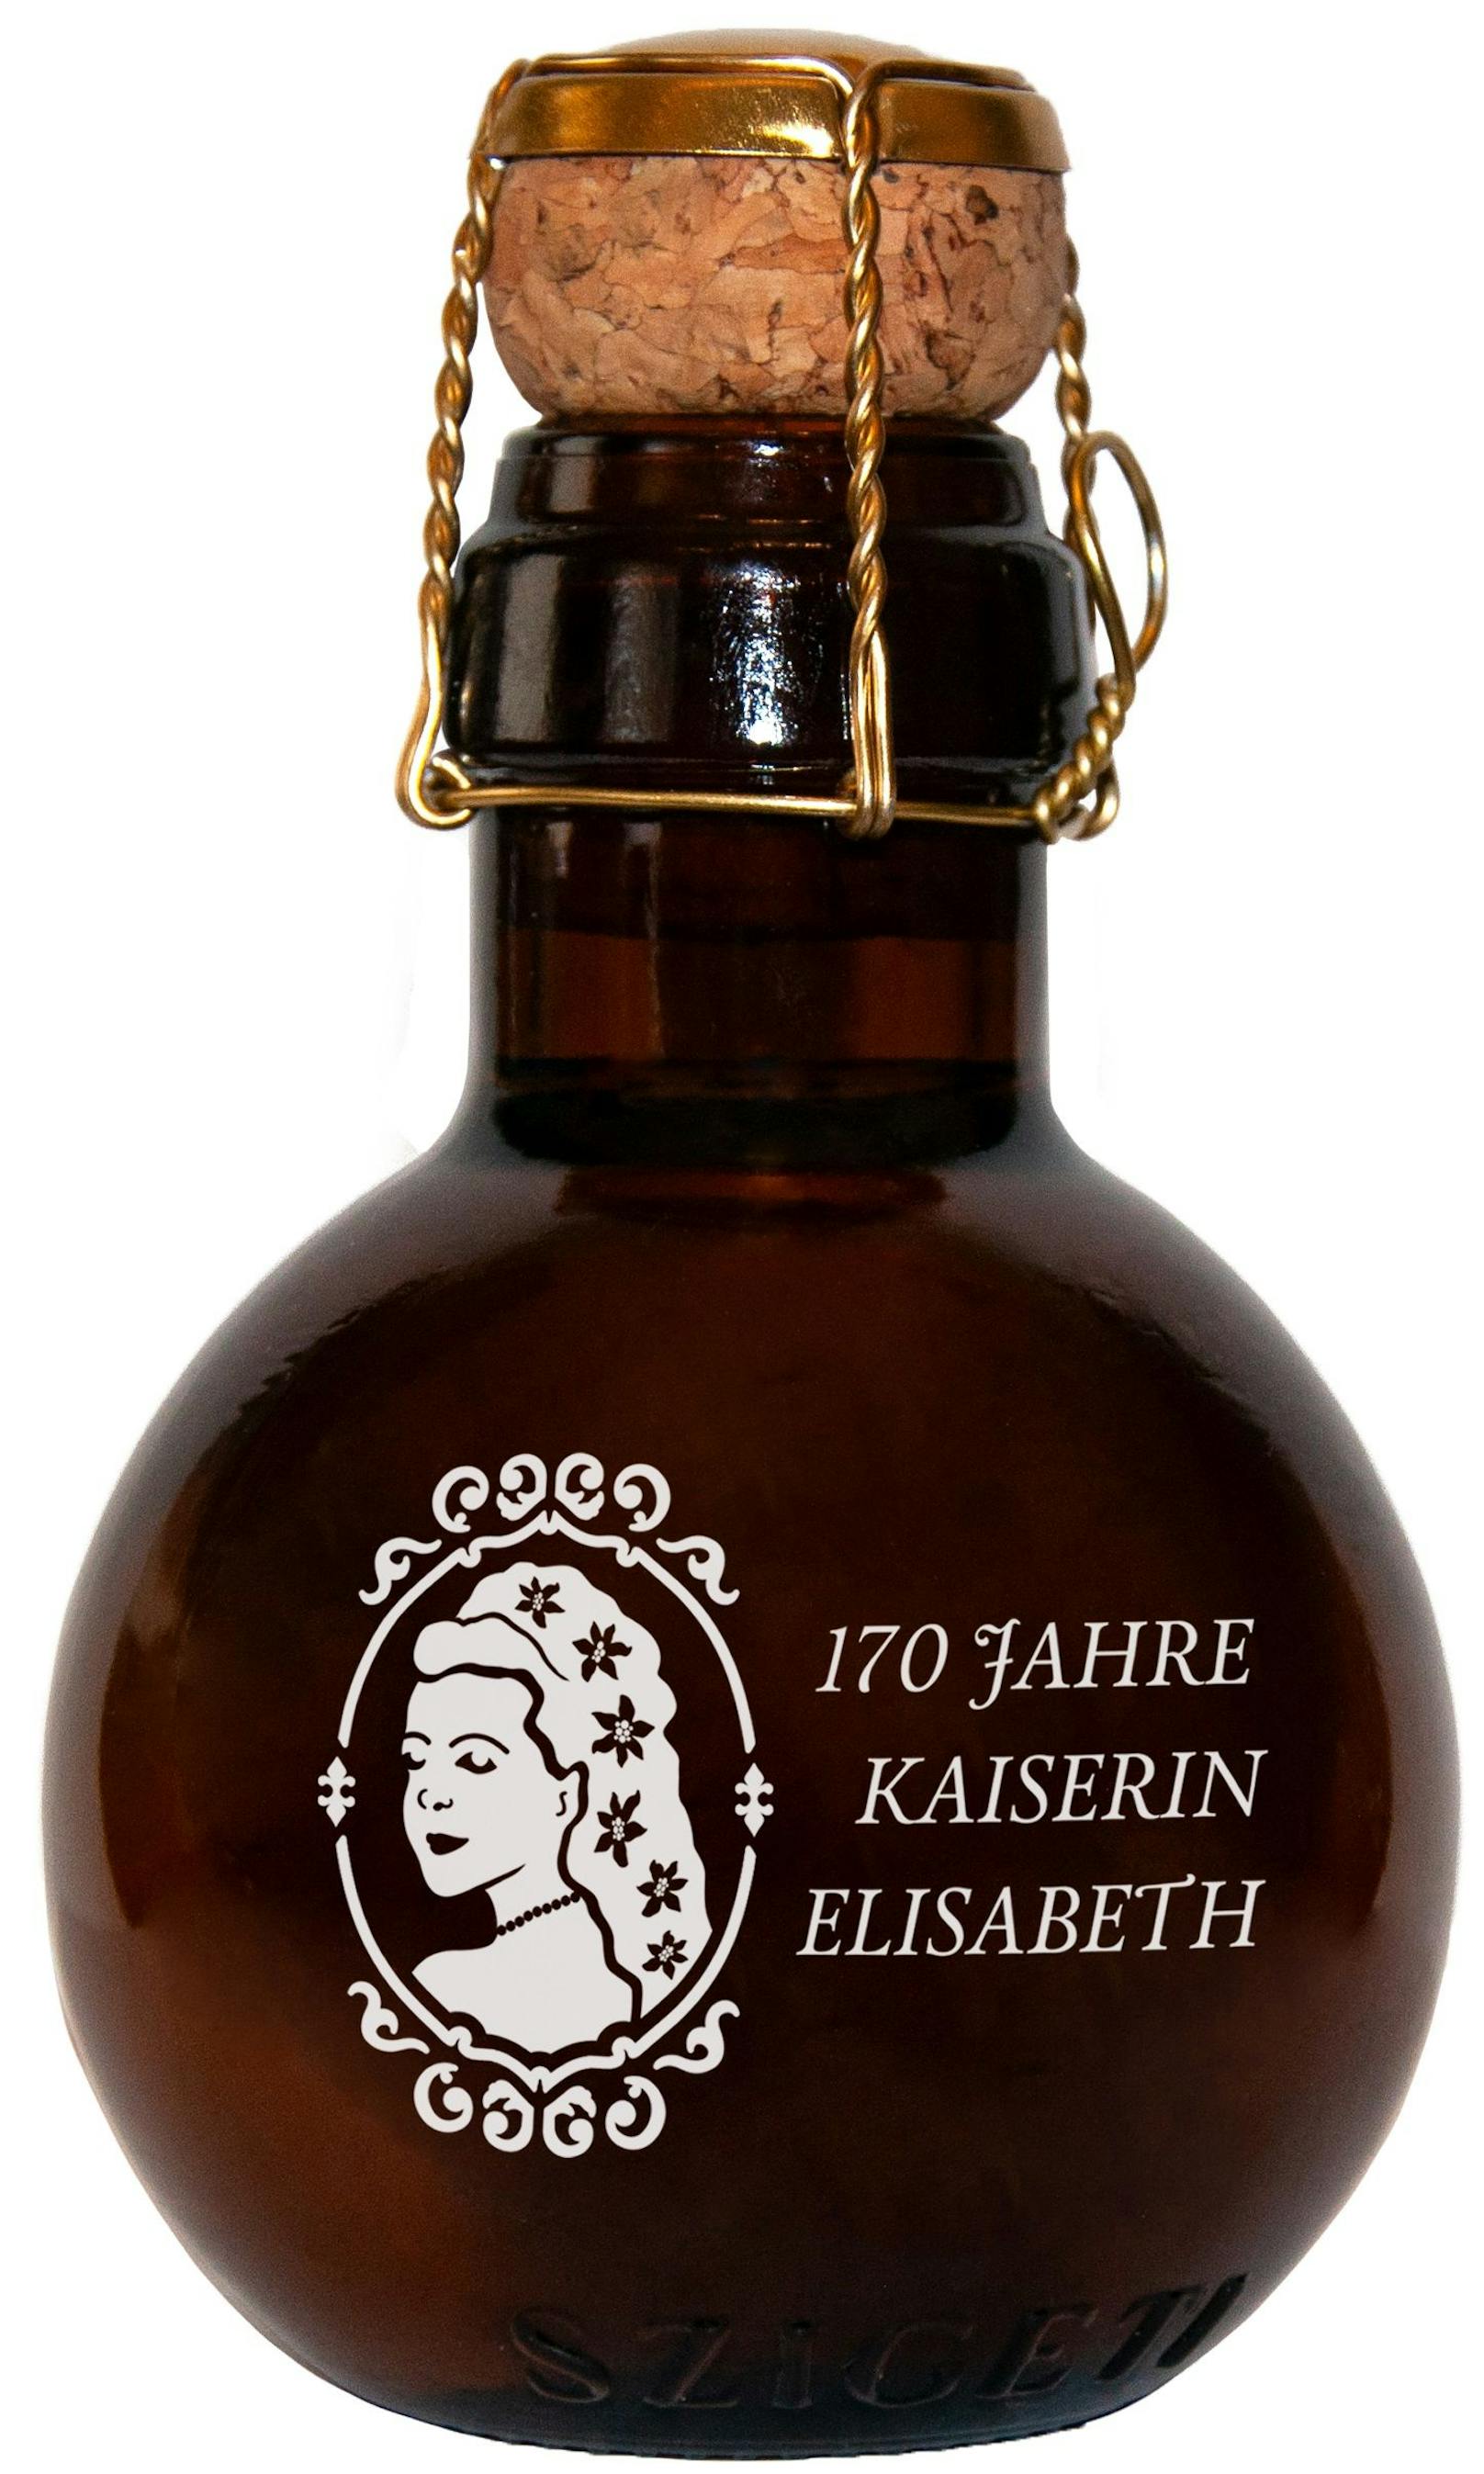 Bubble "Kaiserin Elisabeth, die kleinste Sektflasche der Welt.